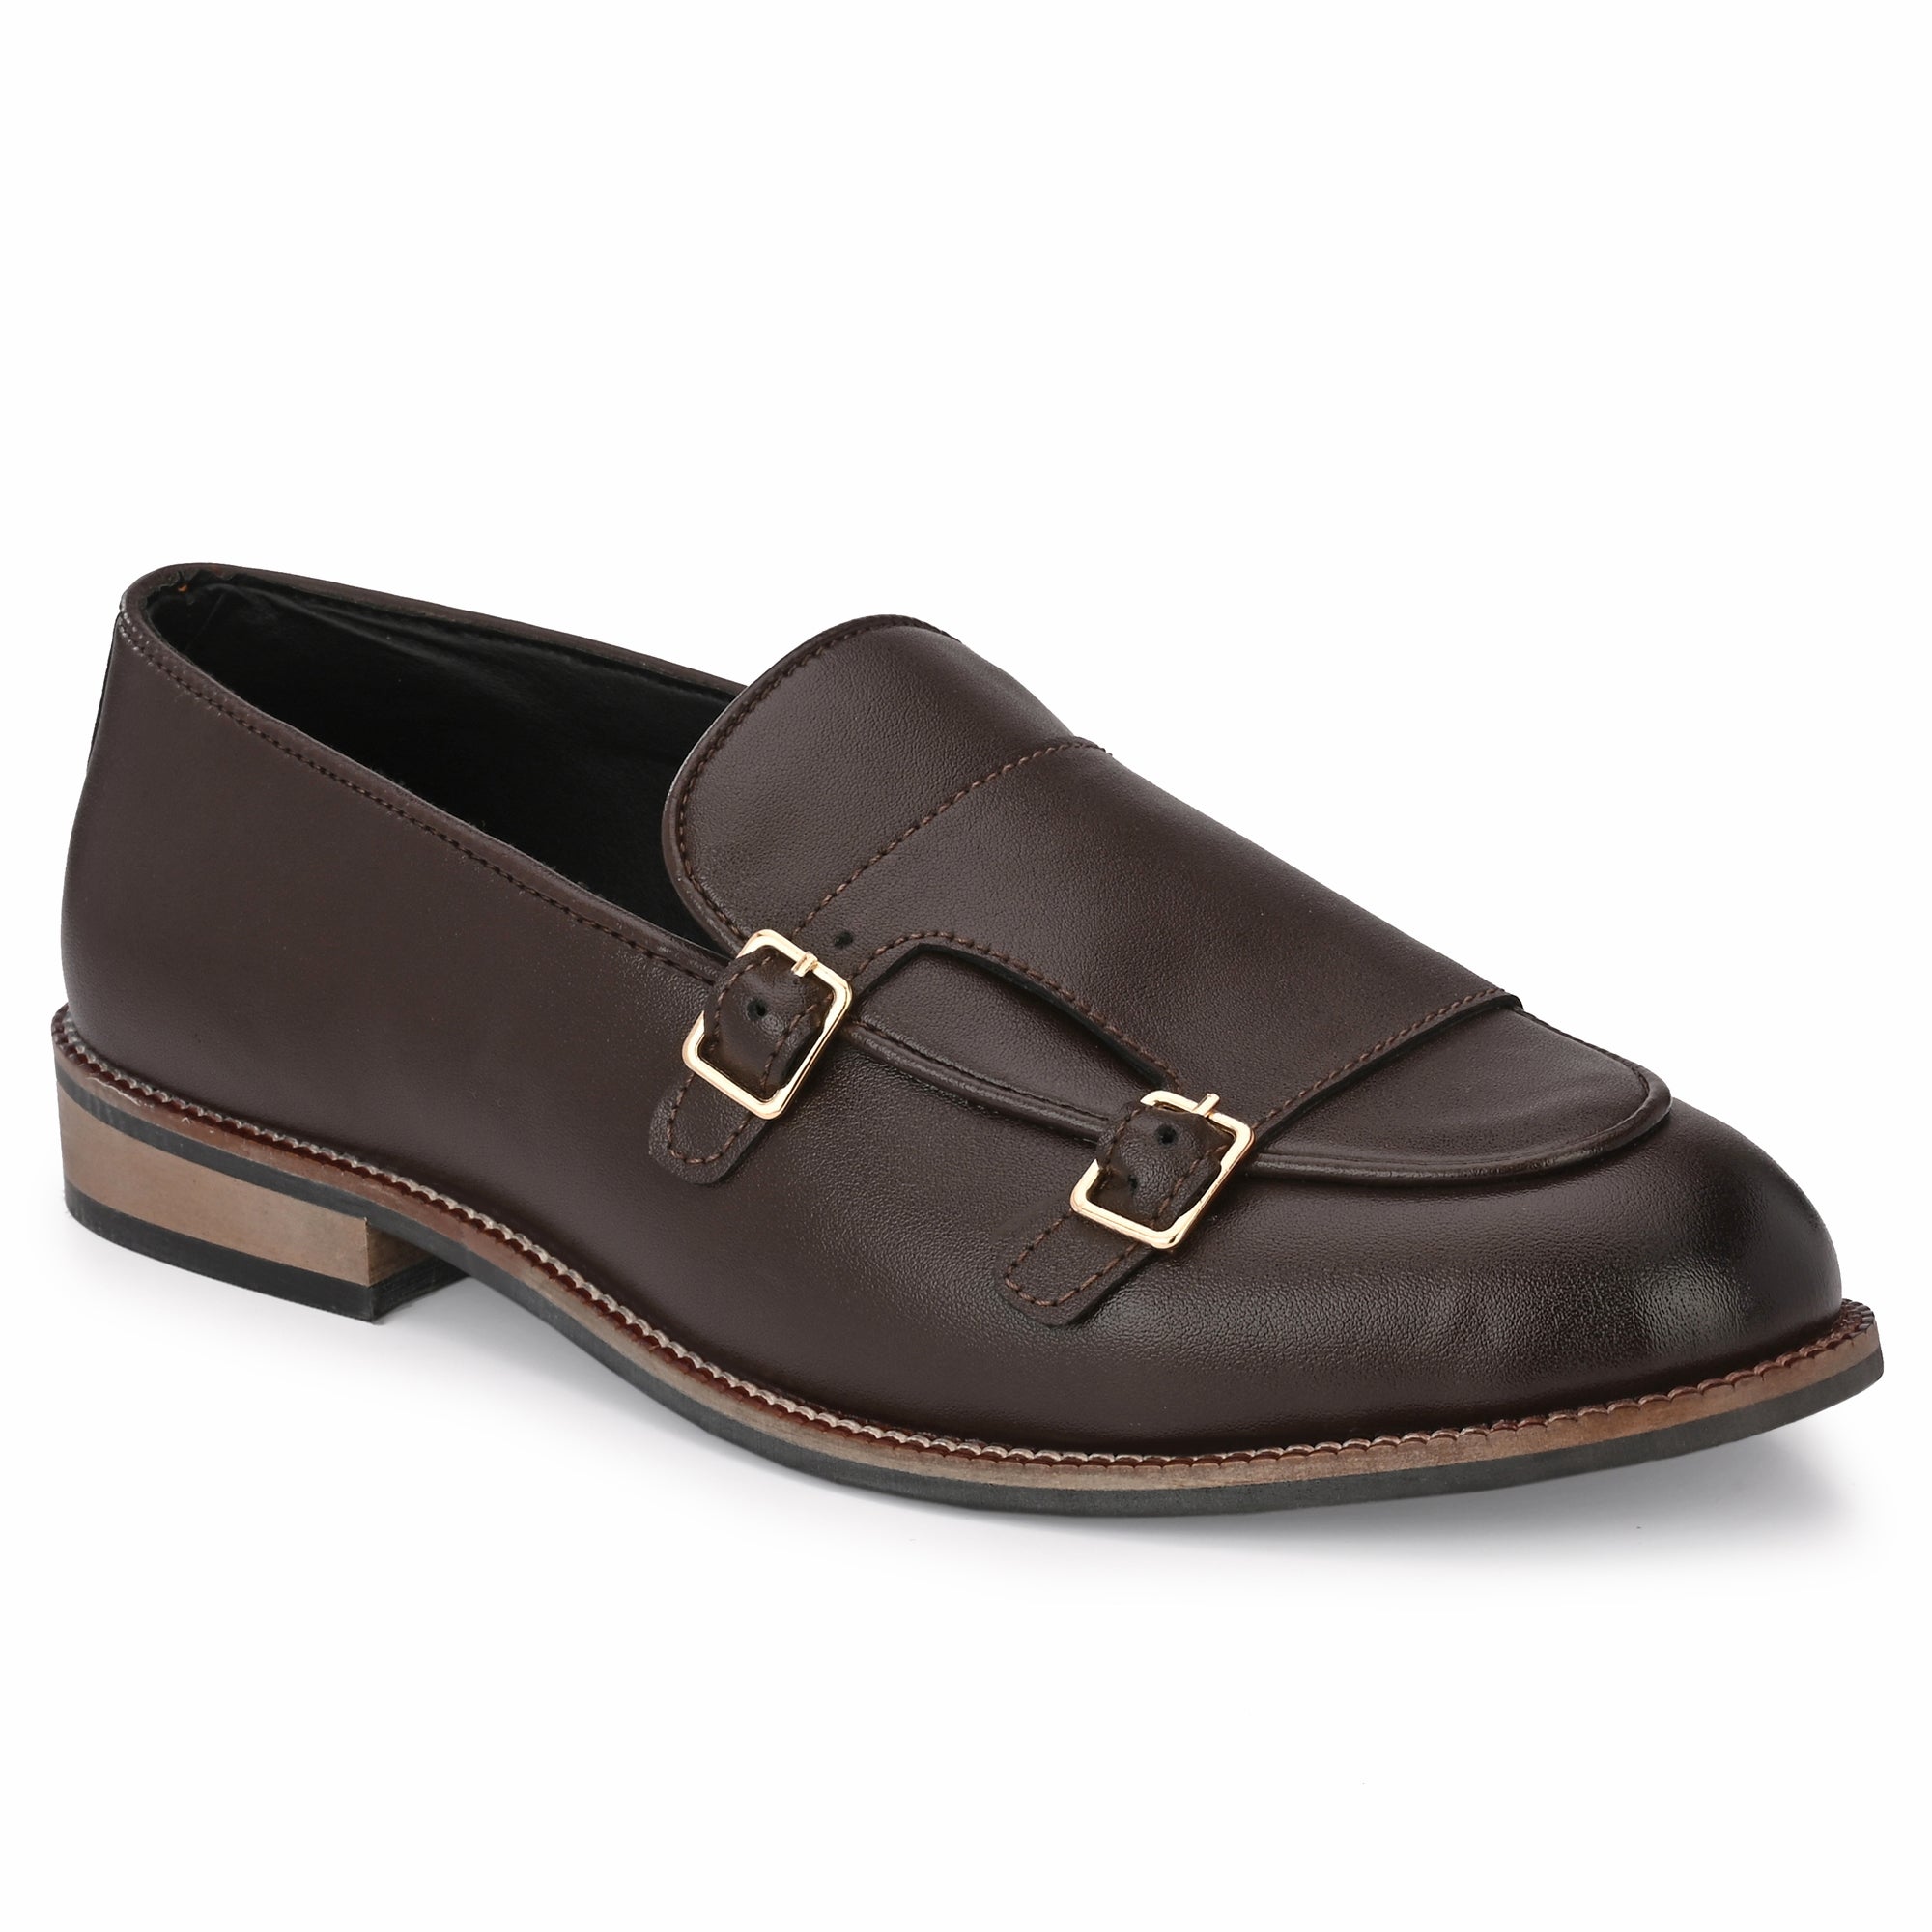 attitudist-matte-brown-double-monk-strap-slip-on-shoes-for-men